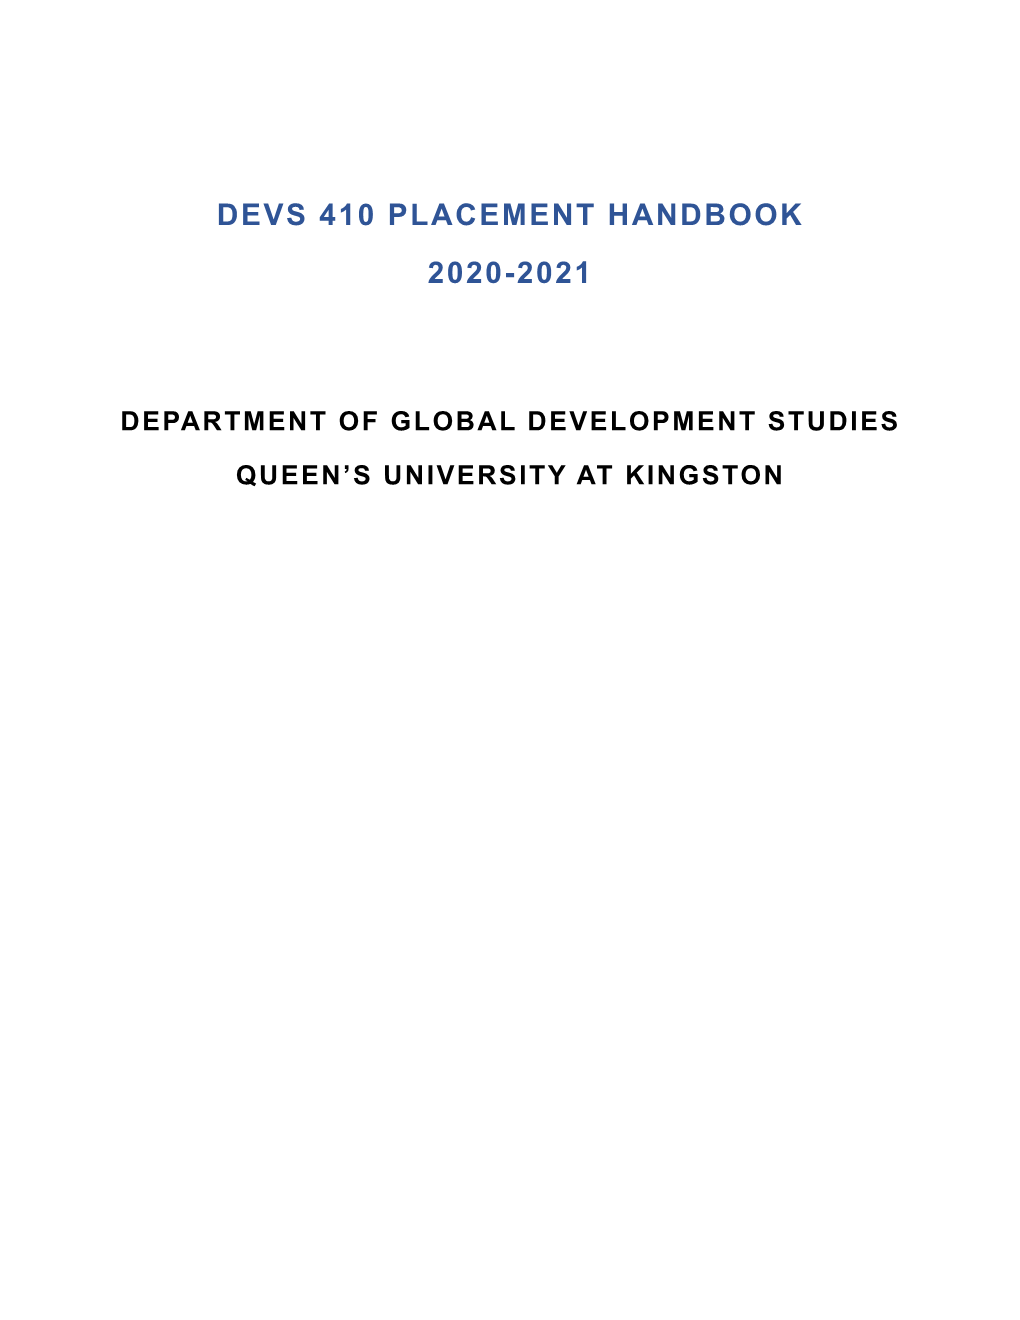 Devs 410 Placement Handbook 2020-2021